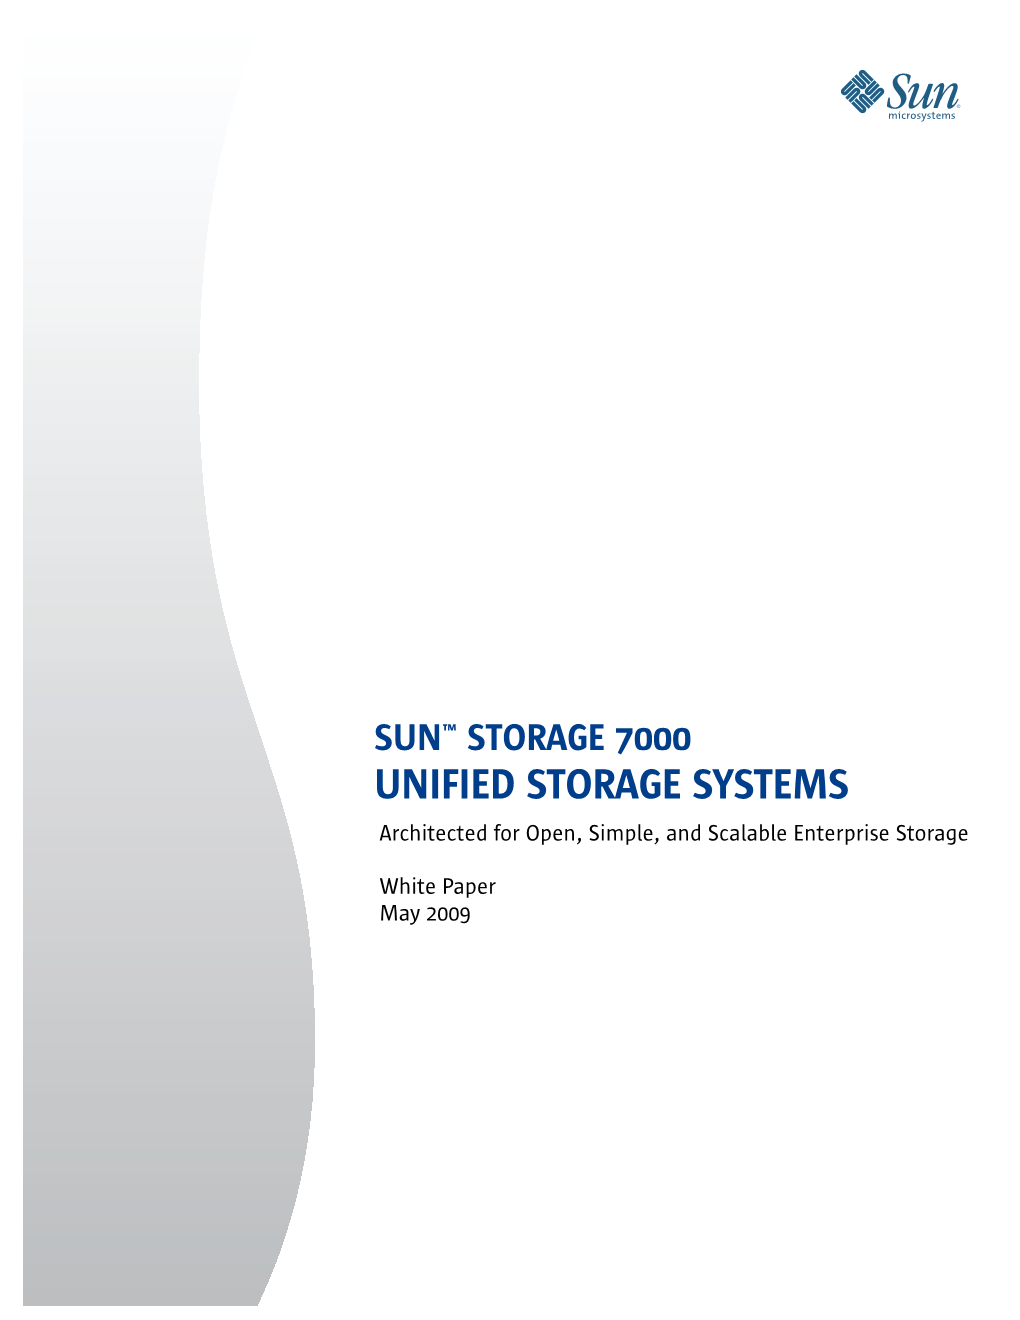 Sun Storage 7000 Unified Storage Systems